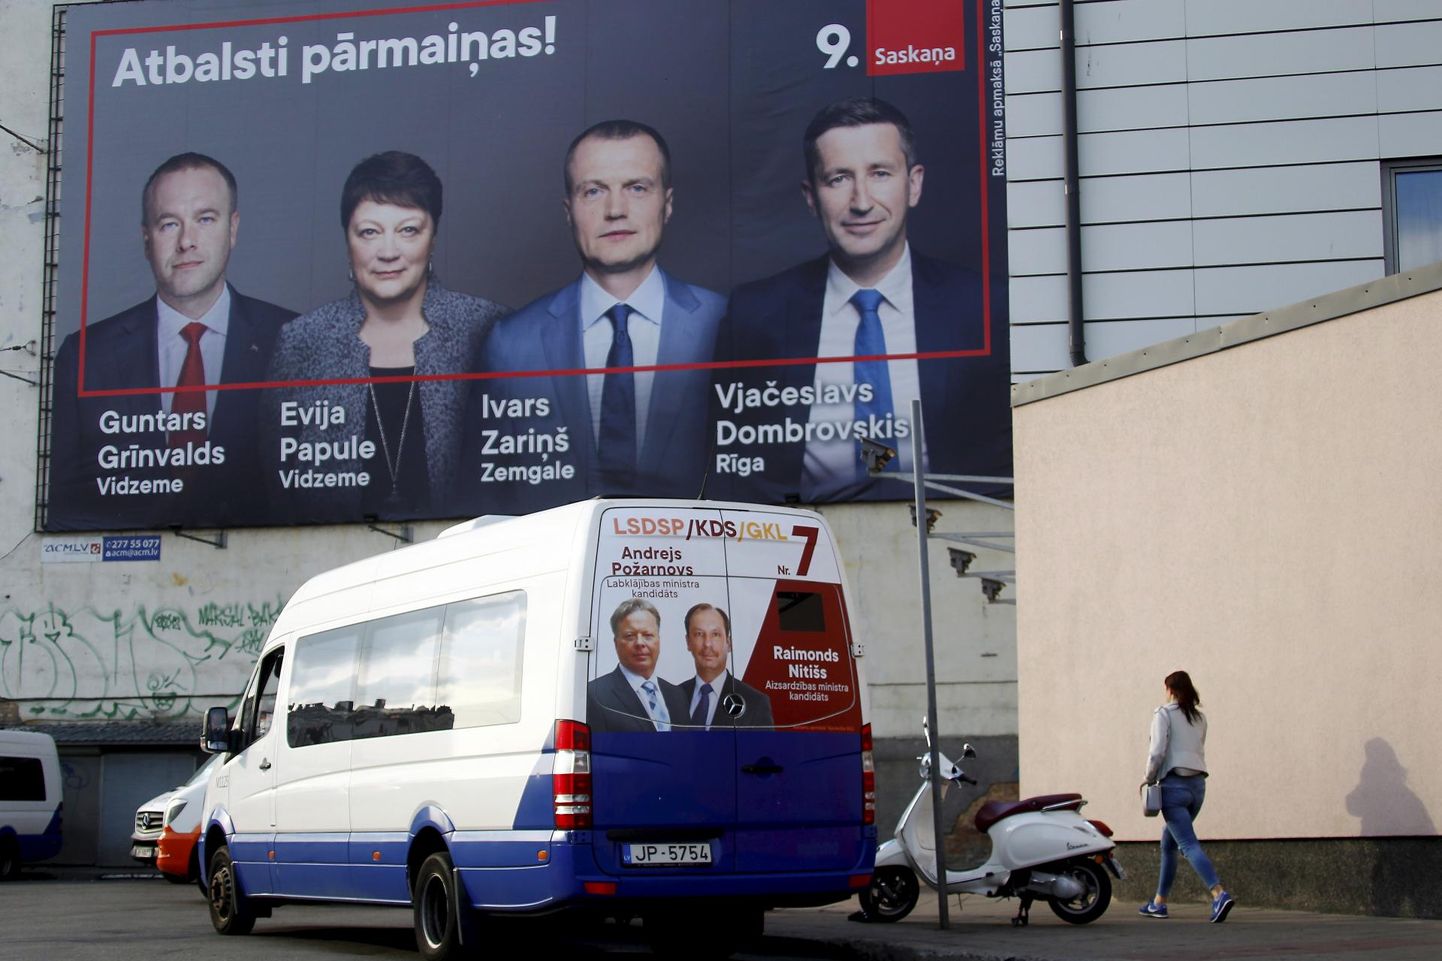 Valimisreklaam tungib Riia linnaruumis peale: seinal erakonna Koosmeel plakat, bussil on aga Töölispartei ja Kristlike Demokraatide Liidu kandidaadid.